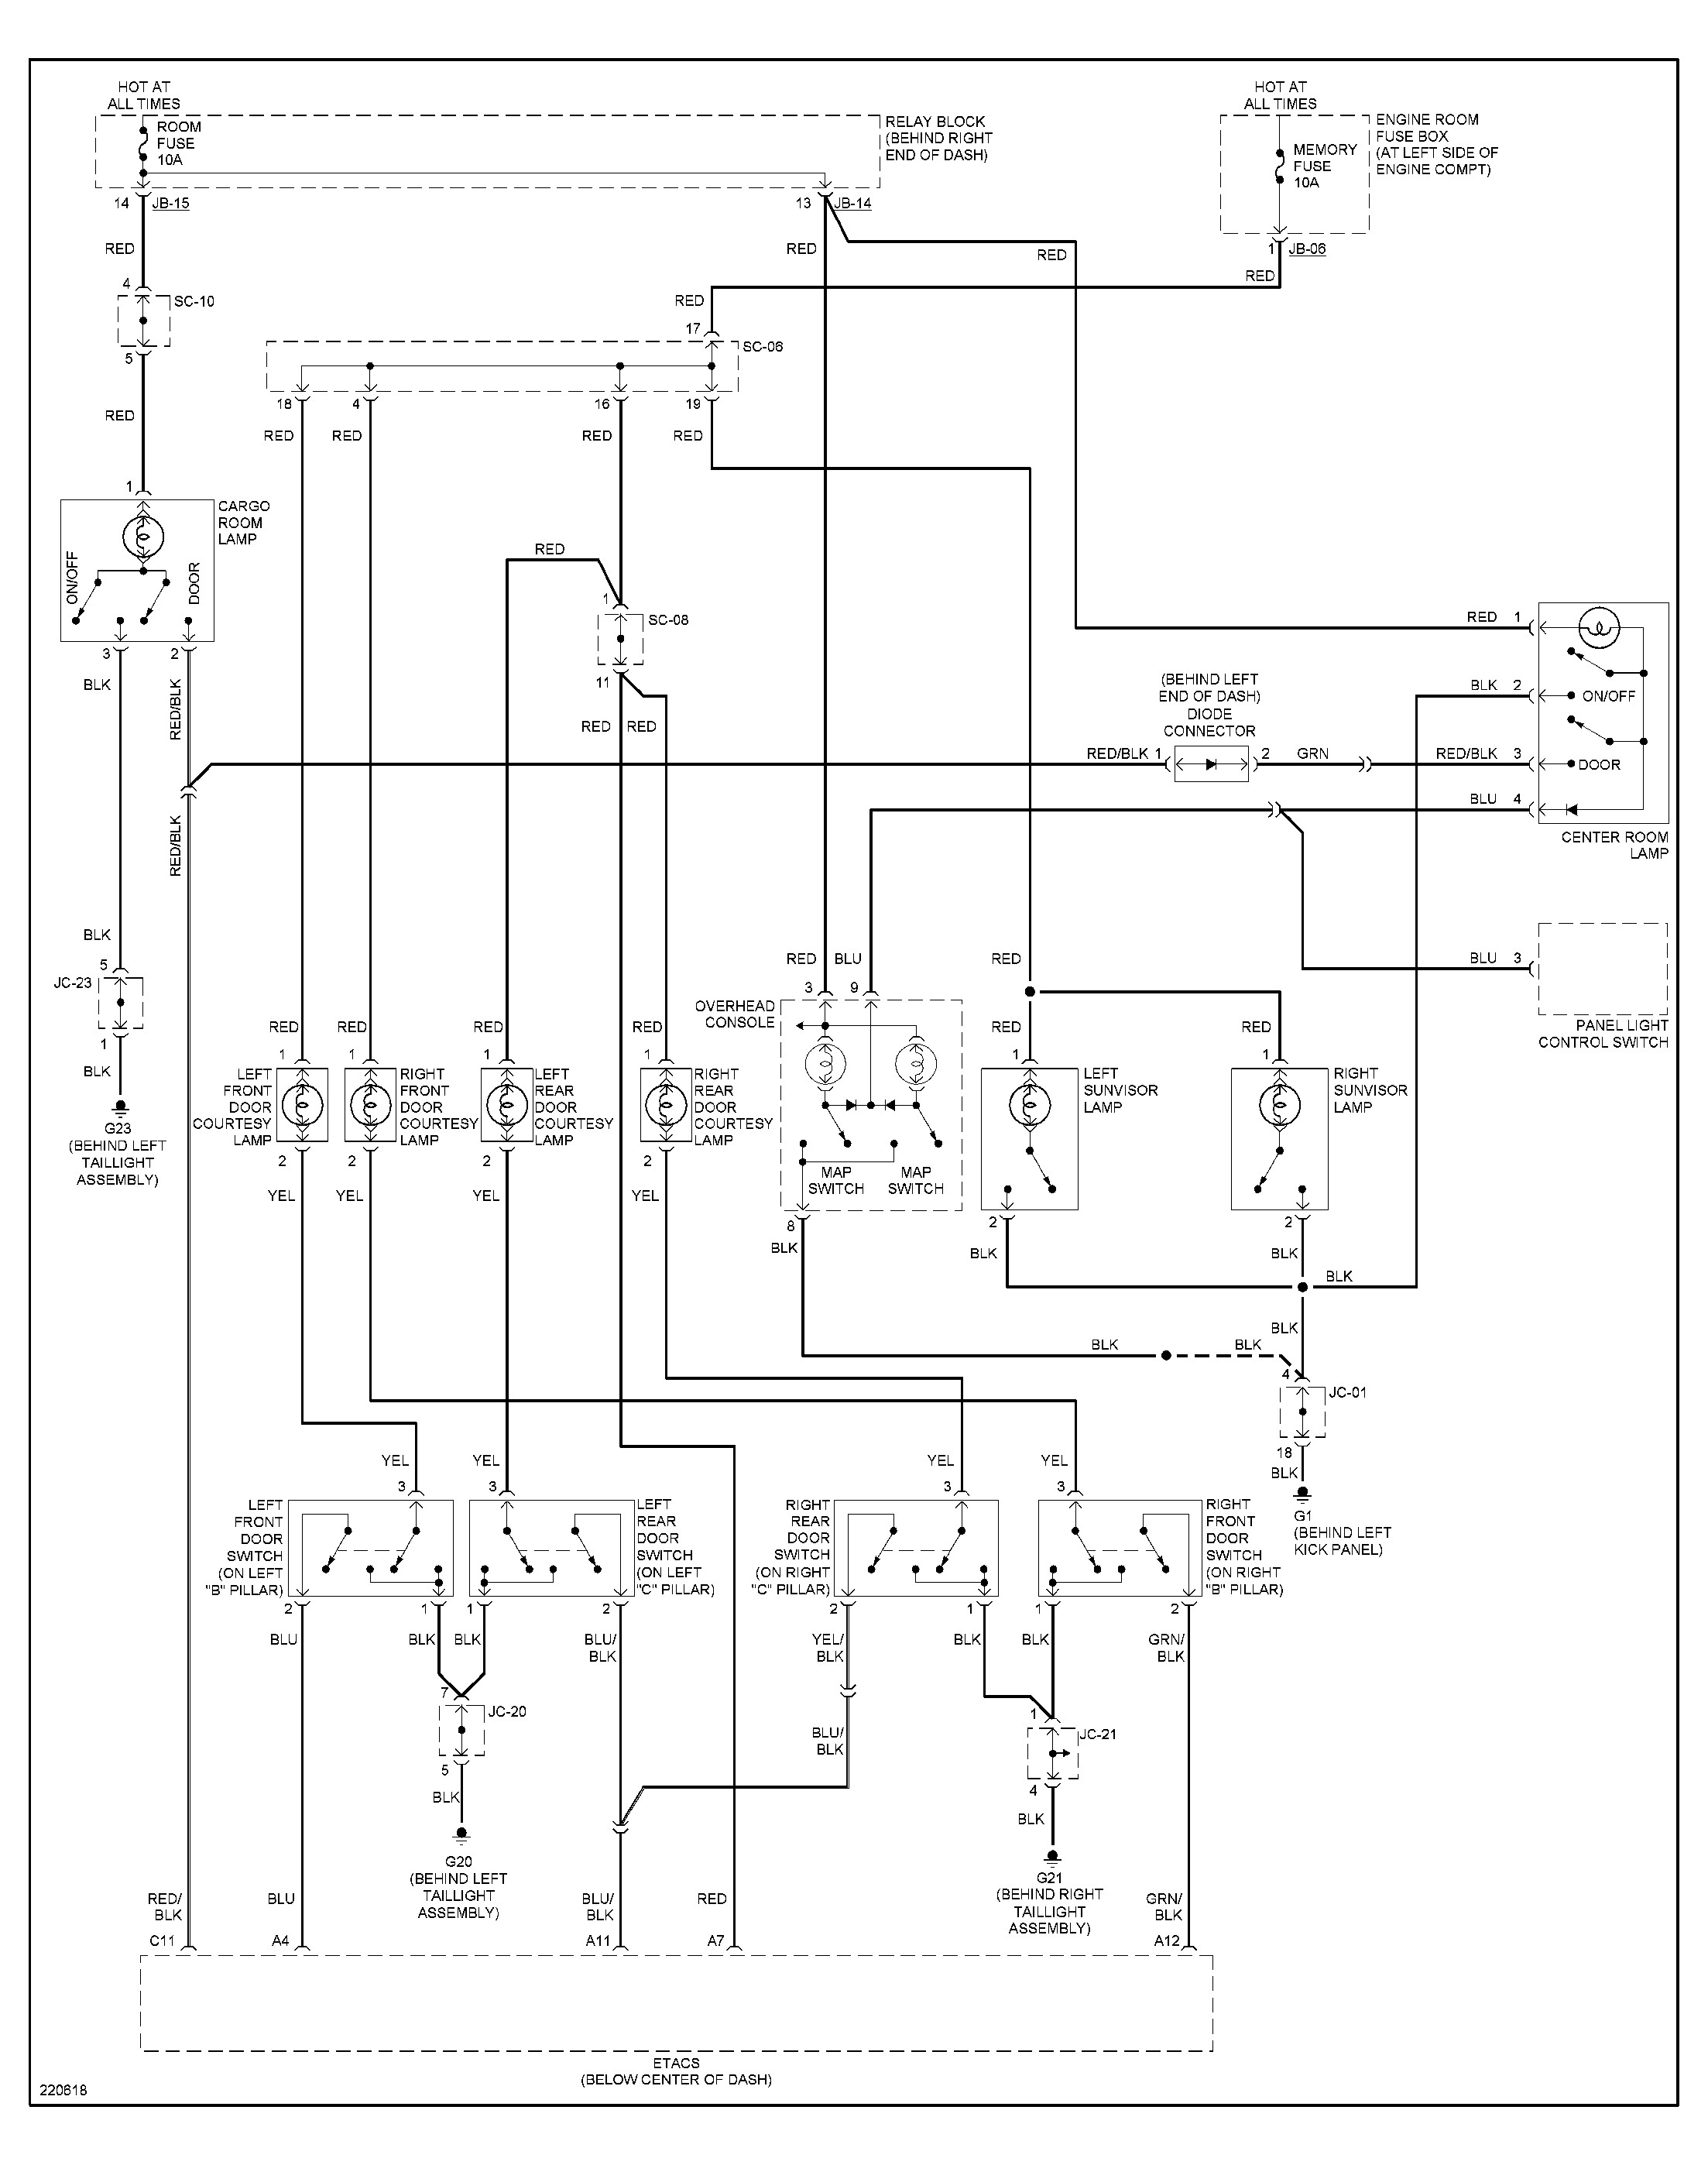 Kia Rio Engine Diagram 2006 Kia Spectra Wiring Diagram Hd Dump Of Kia Rio Engine Diagram